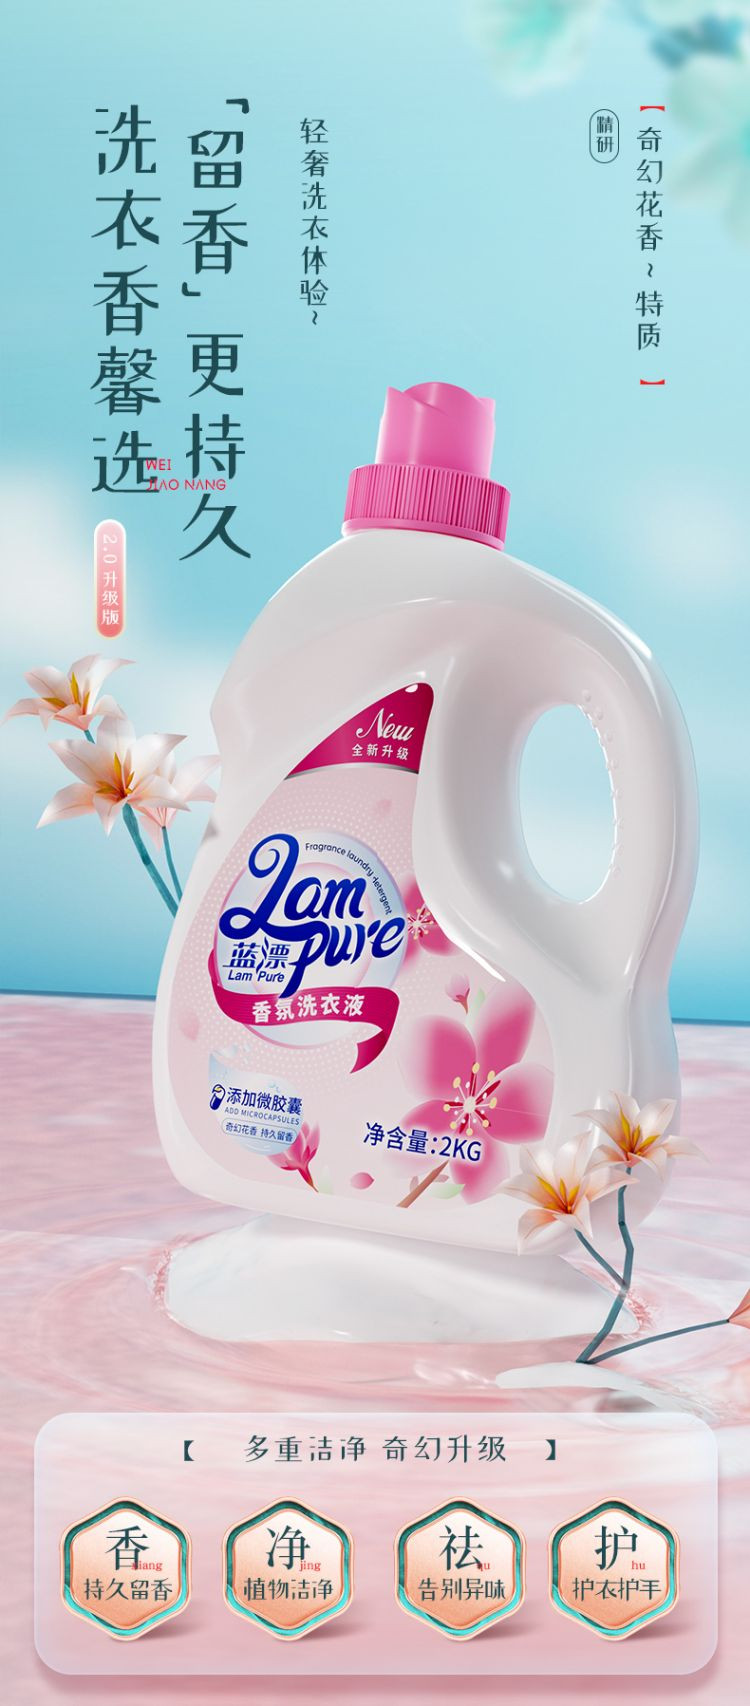 蓝漂LP-368274香氛洗衣液2KG-2瓶